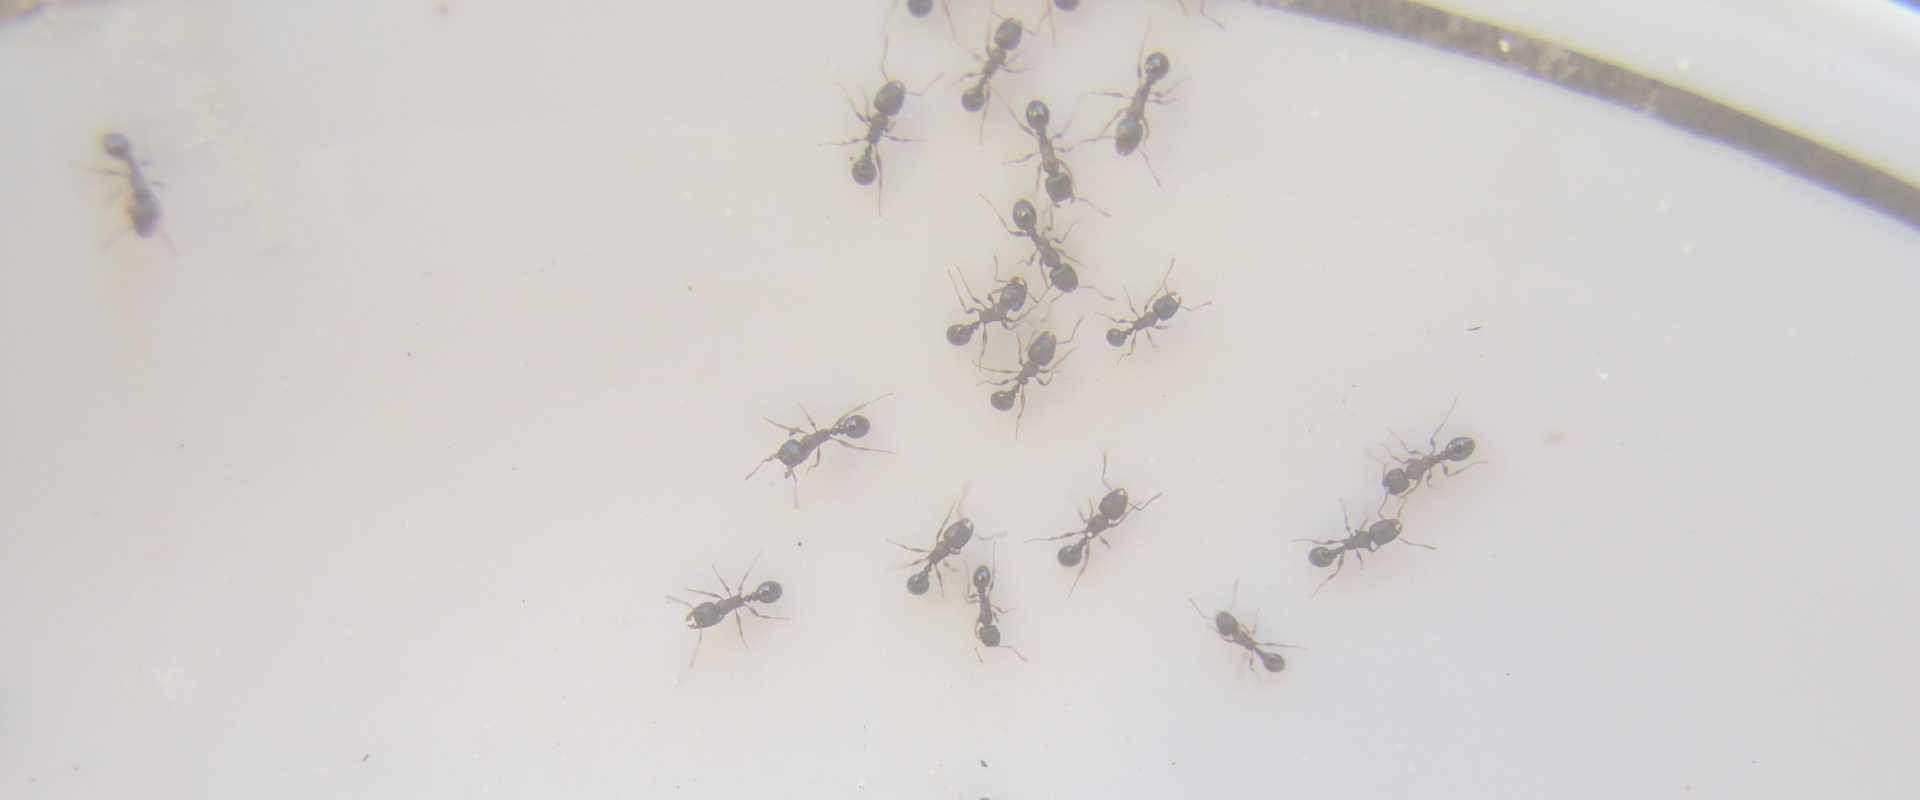 pest control in hyattsville md